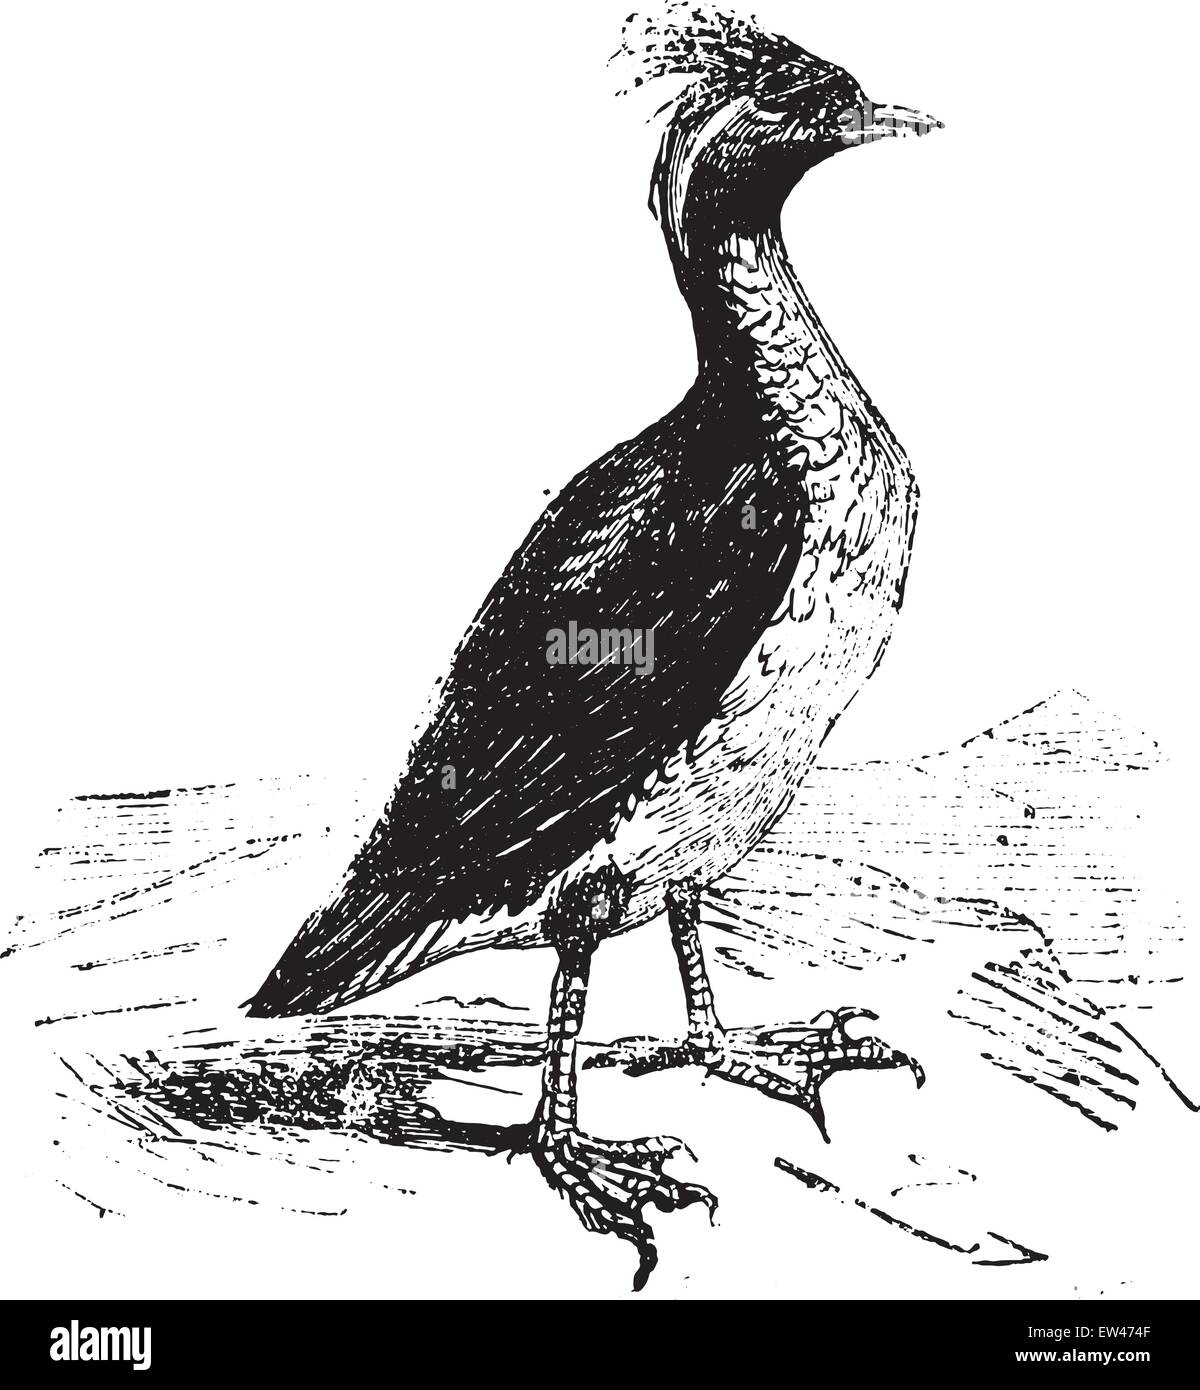 Guillemot, vintage engraved illustration. Stock Vector